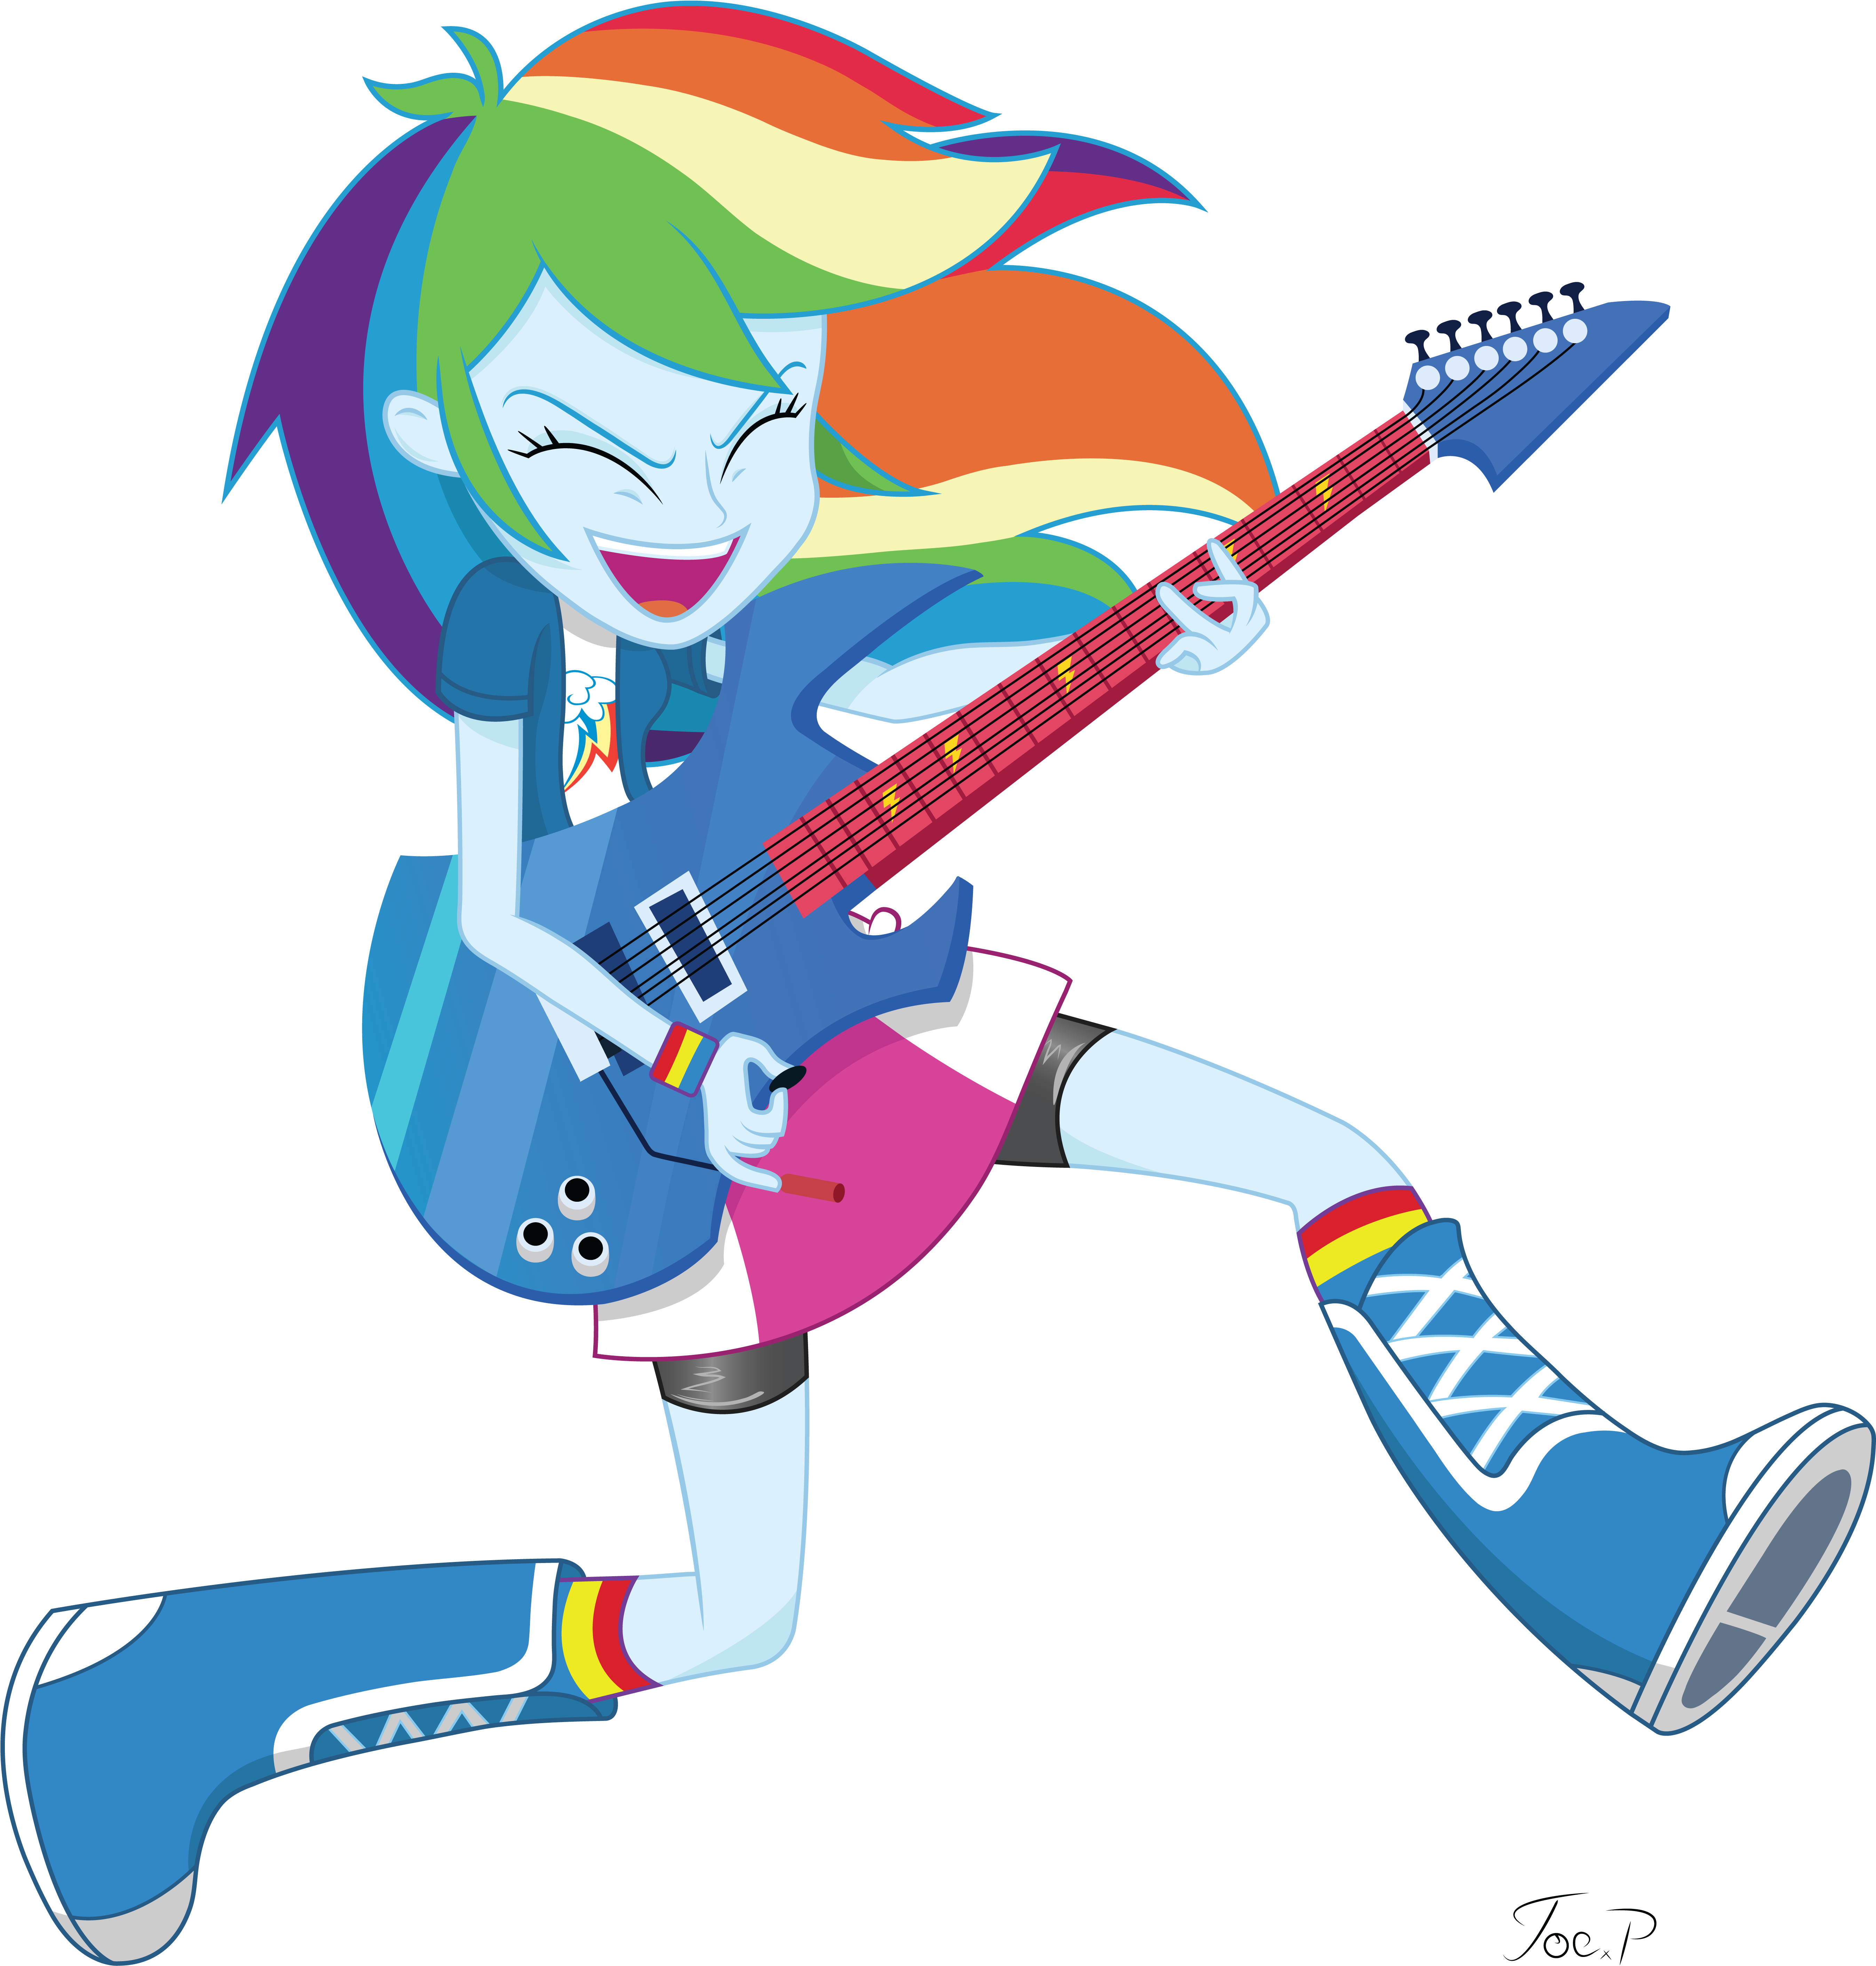 Equestria Girls Rainbow Dash - My Little Pony Equestria Girl Rainbow Dash (5474x5900)